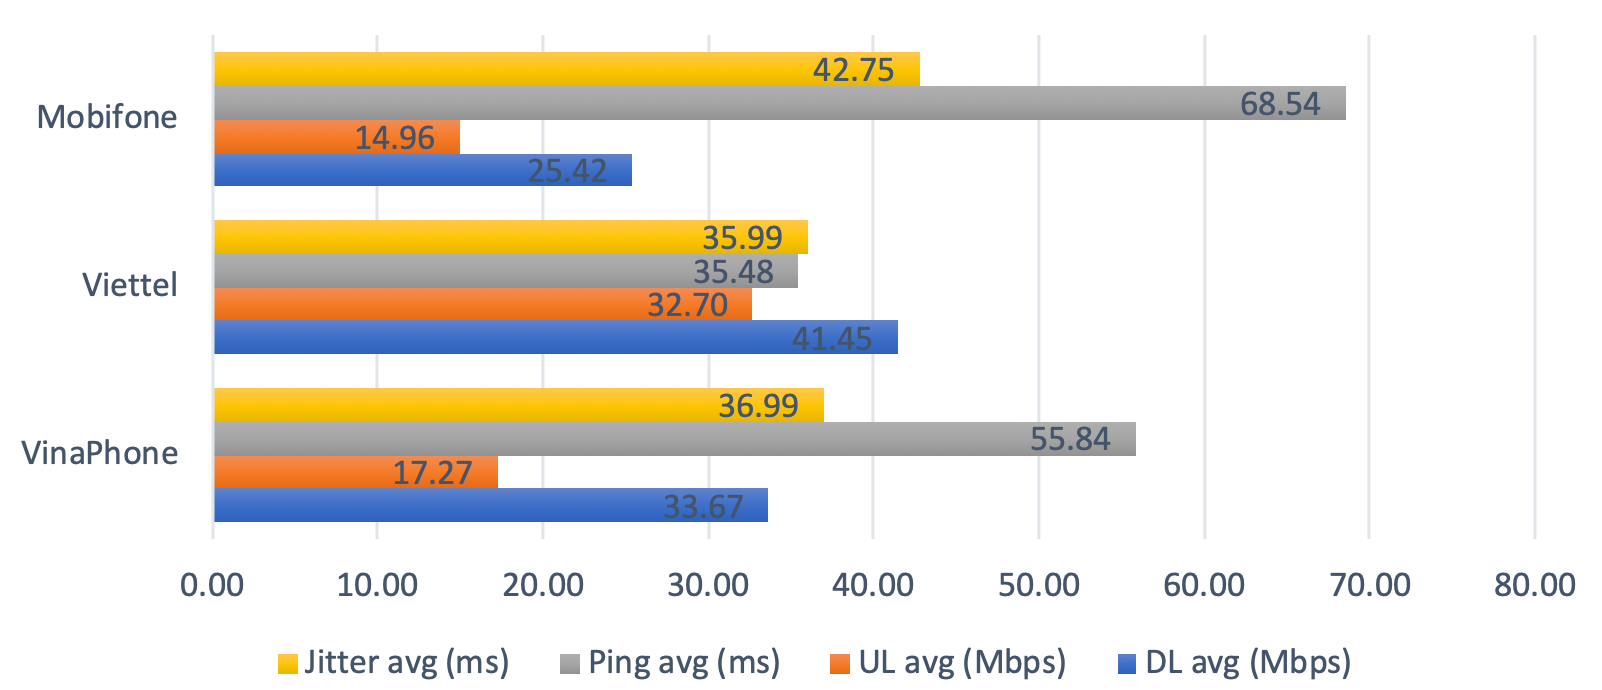 Chất lượng truy cập Internet Việt Nam đạt mức cao dù Covid-19 - Ảnh 4.